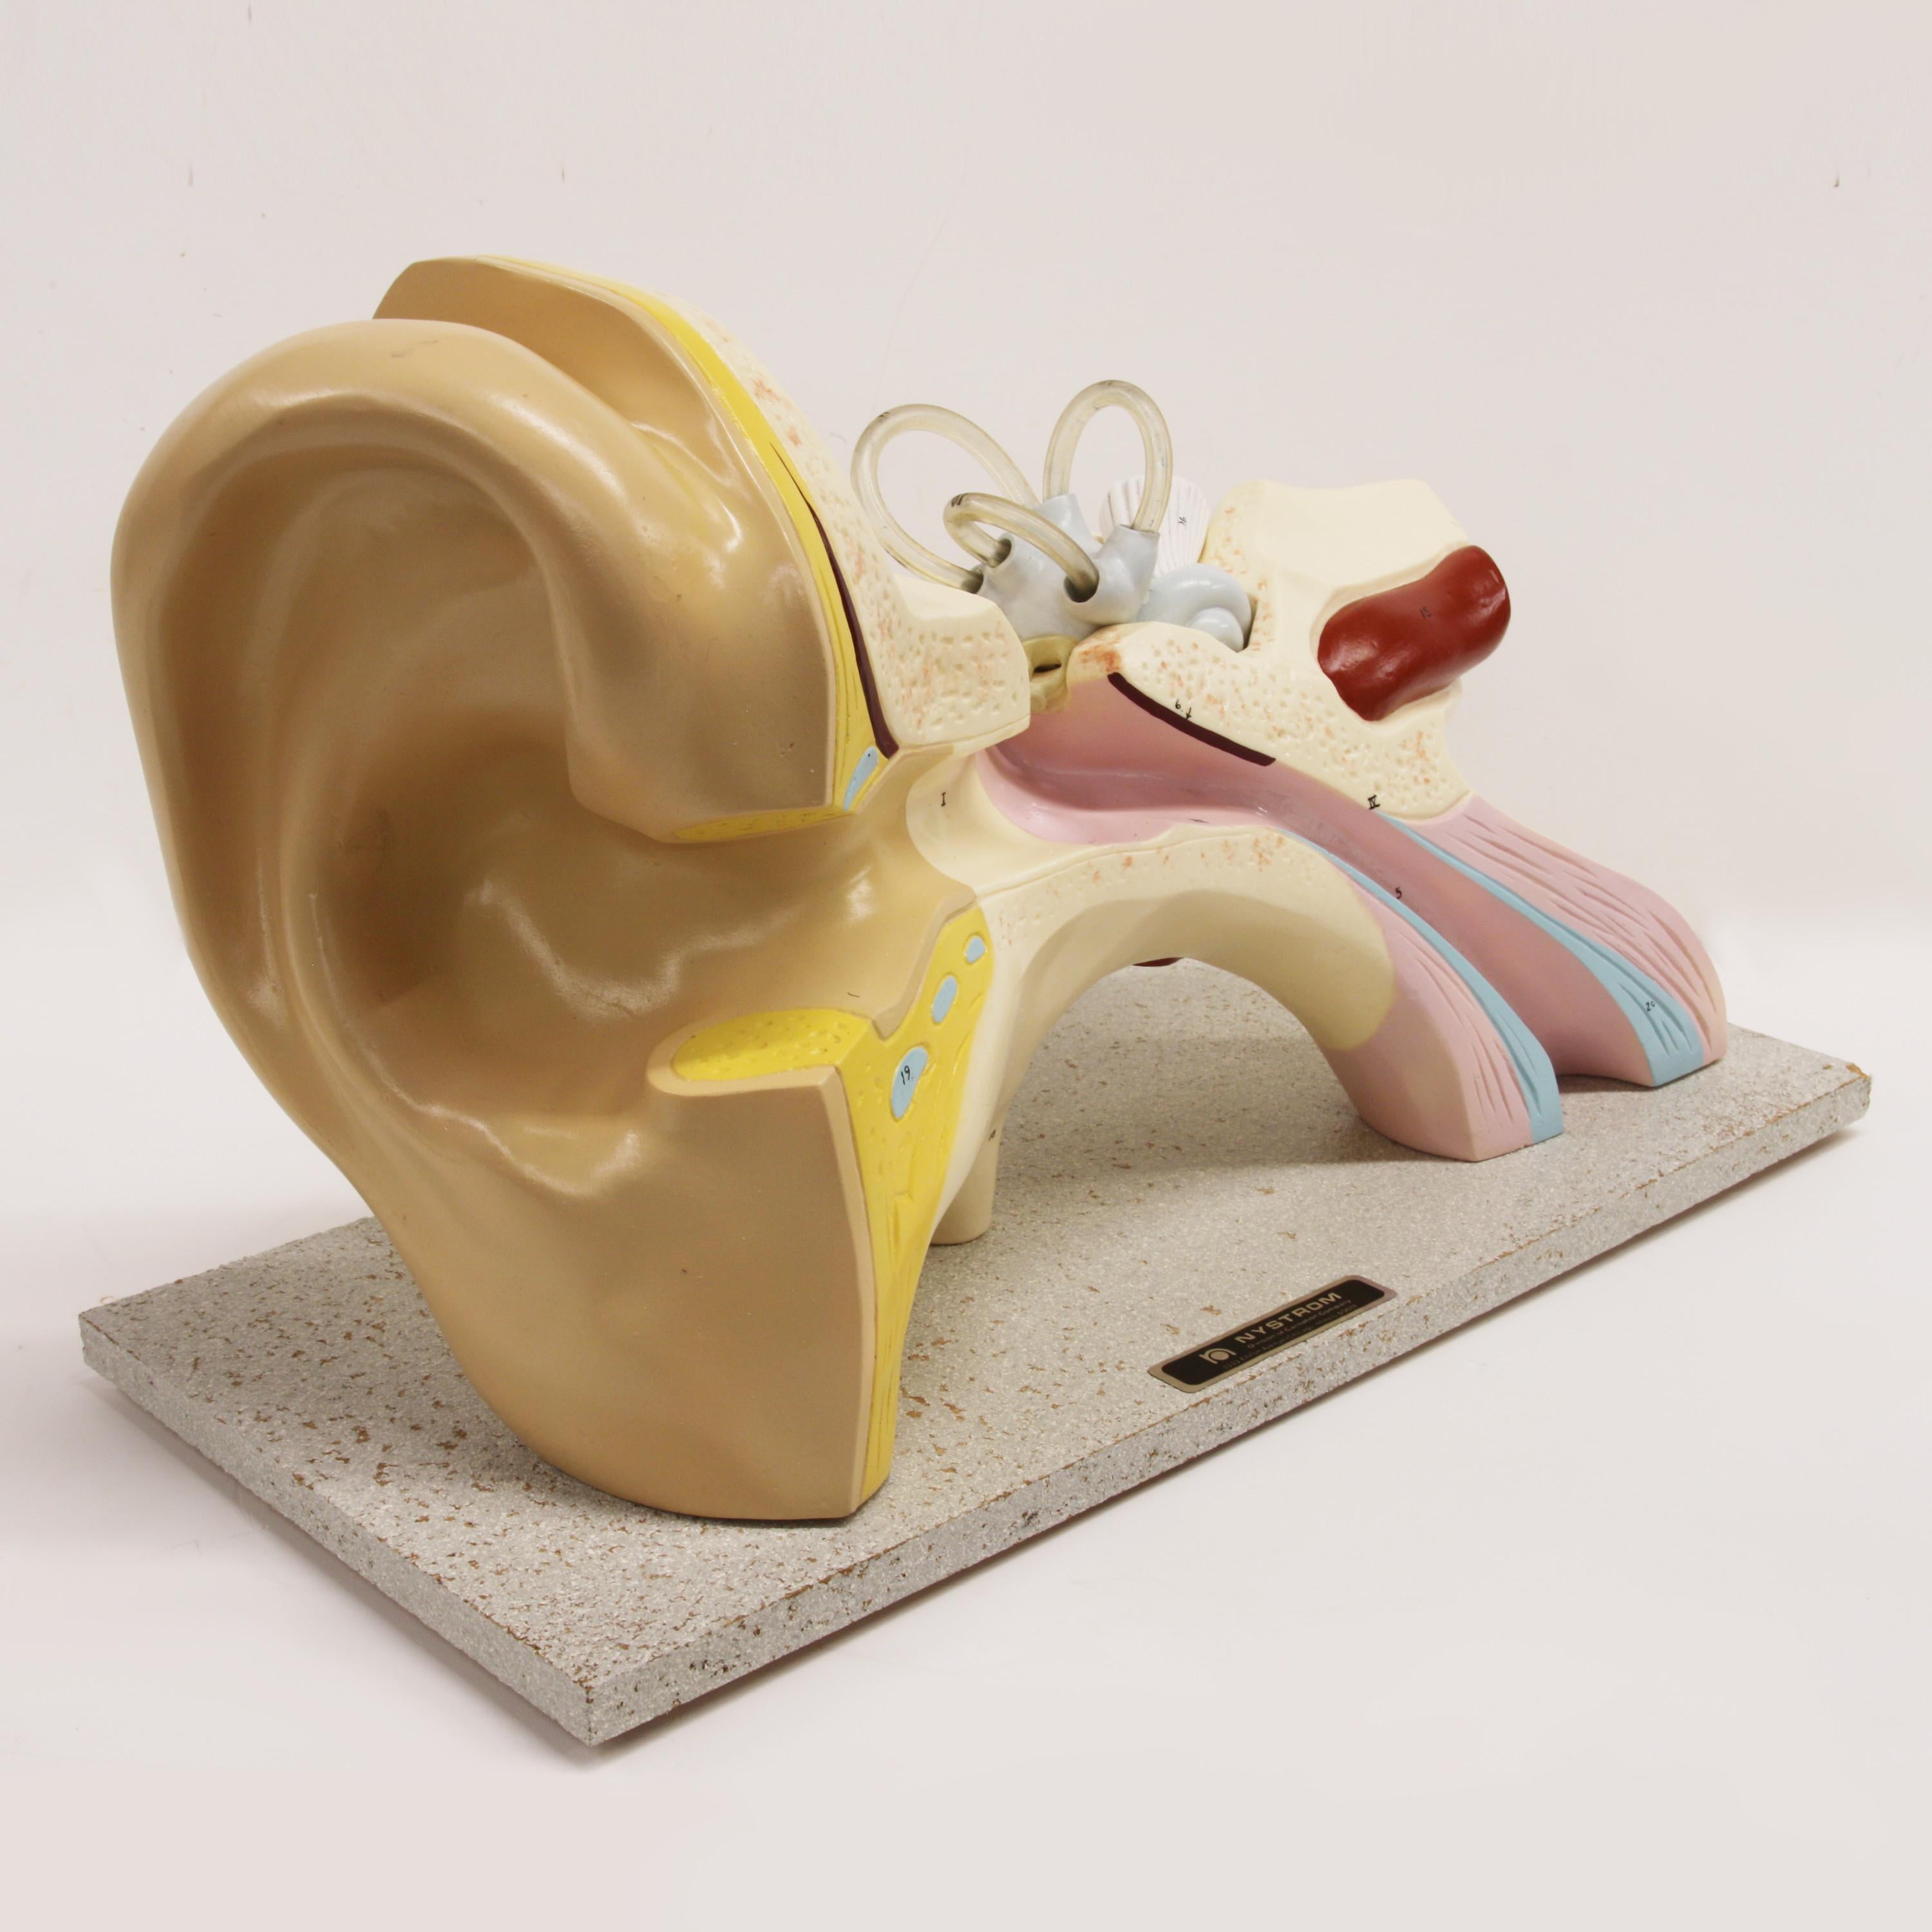 Grand modèle d'oreille 3D humain anatomique scientifique vintage des années 1960. Fabriqué par la Nystrom Co. de Chicago, Illinois. Grande échelle de 17